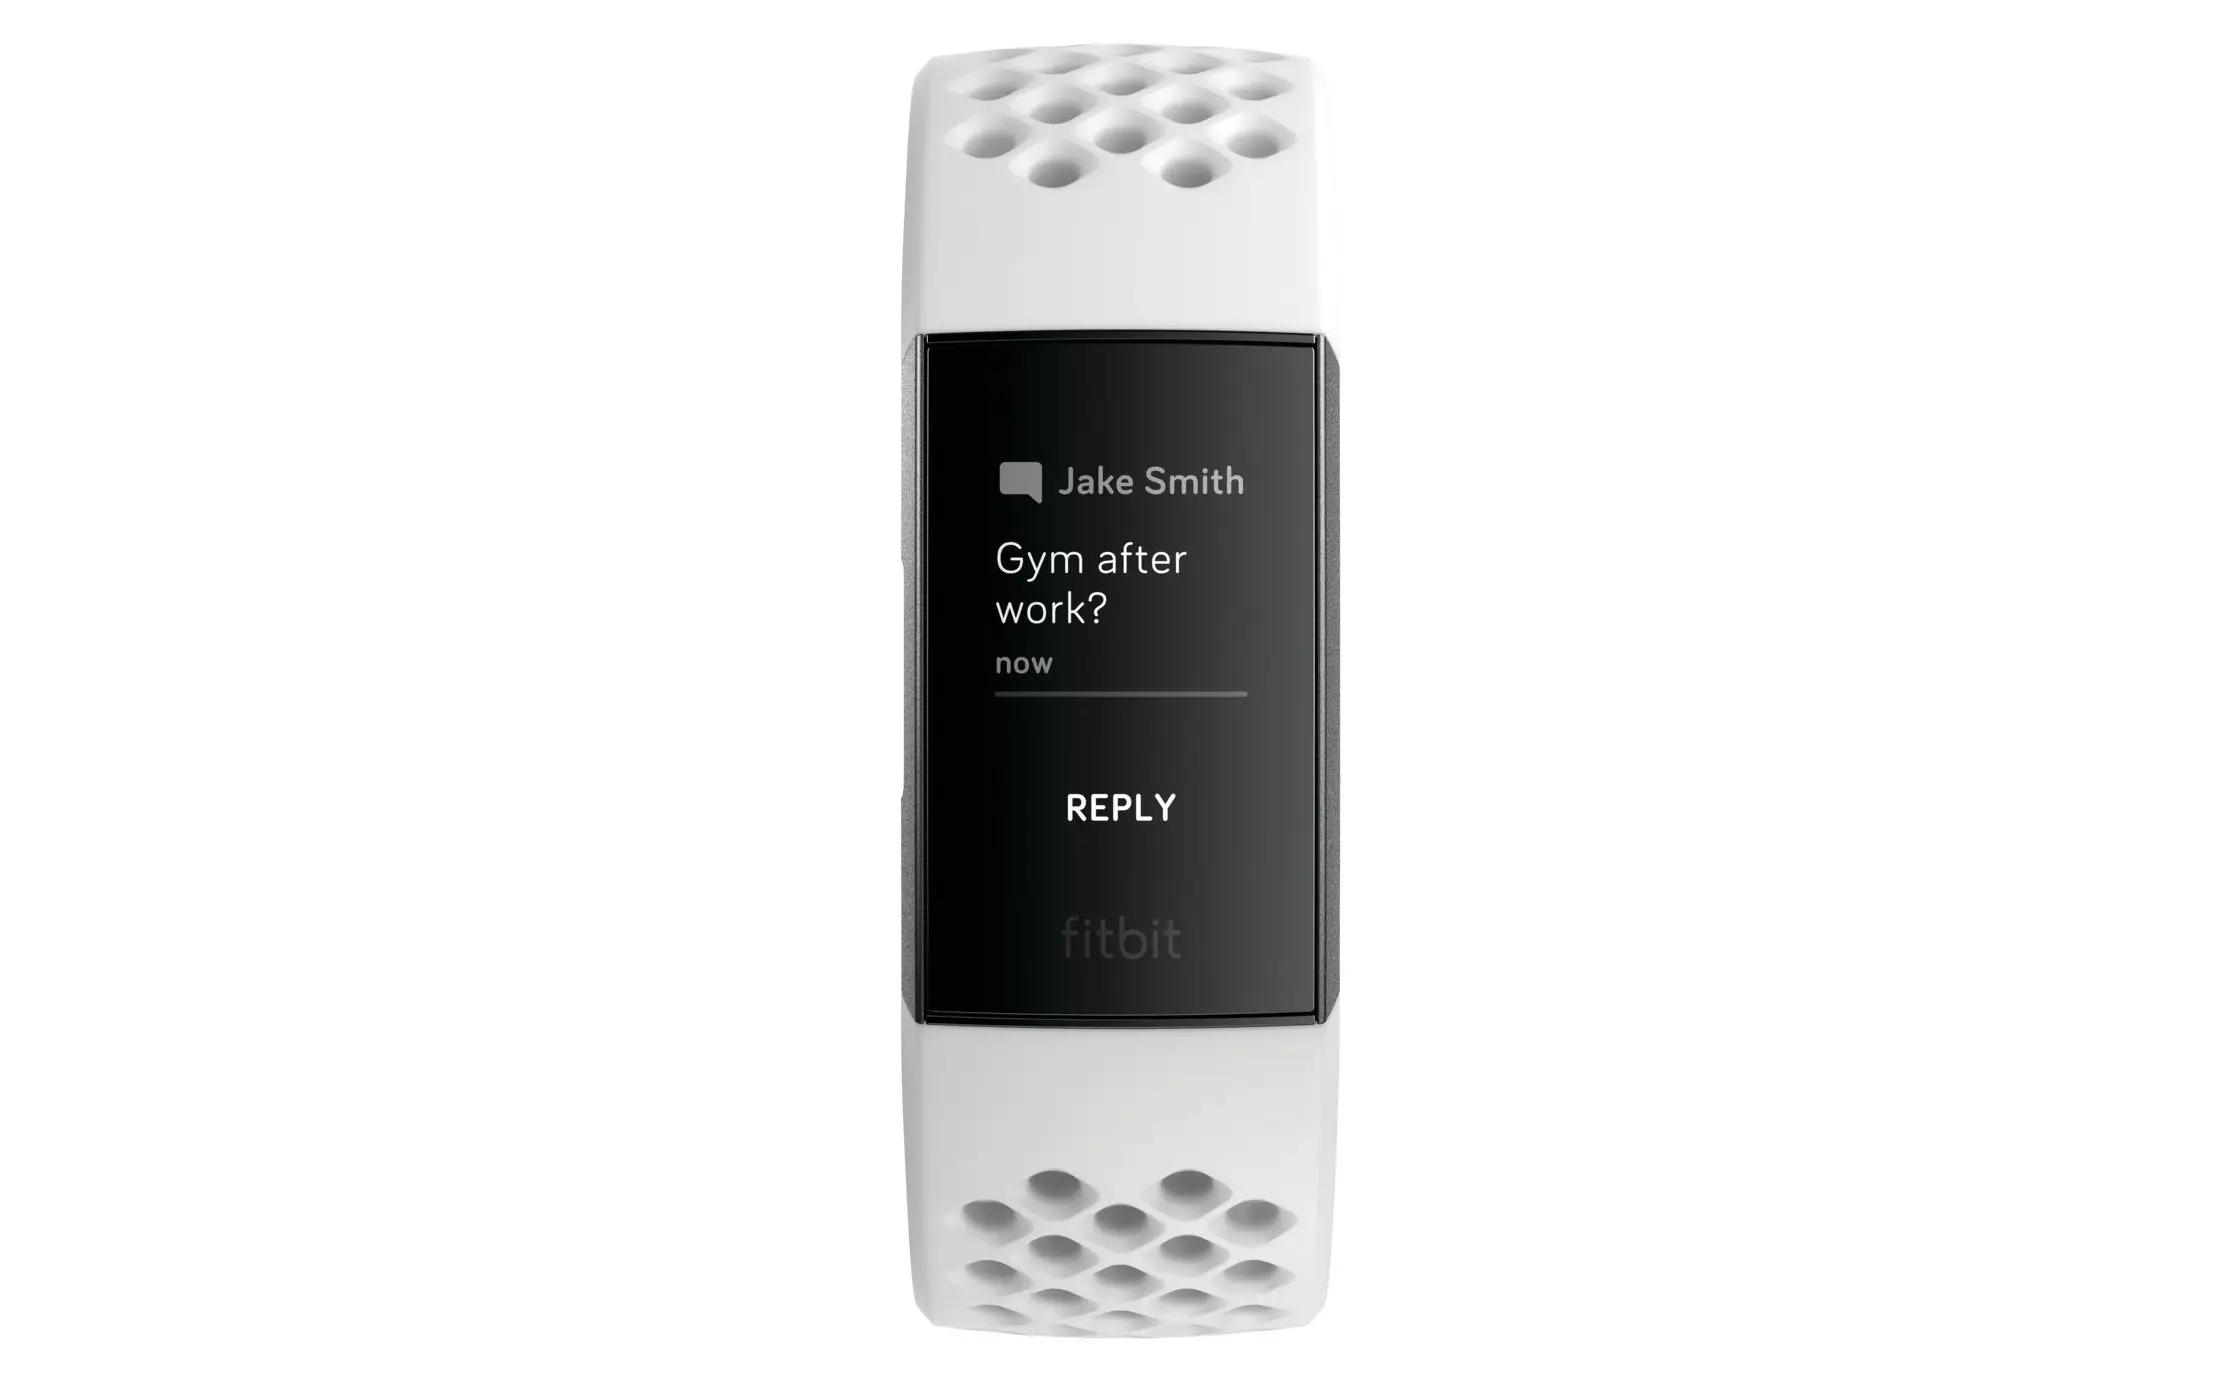 o Fitbit Charge 3 mostrando uma mensagem de texto exibida na tela.